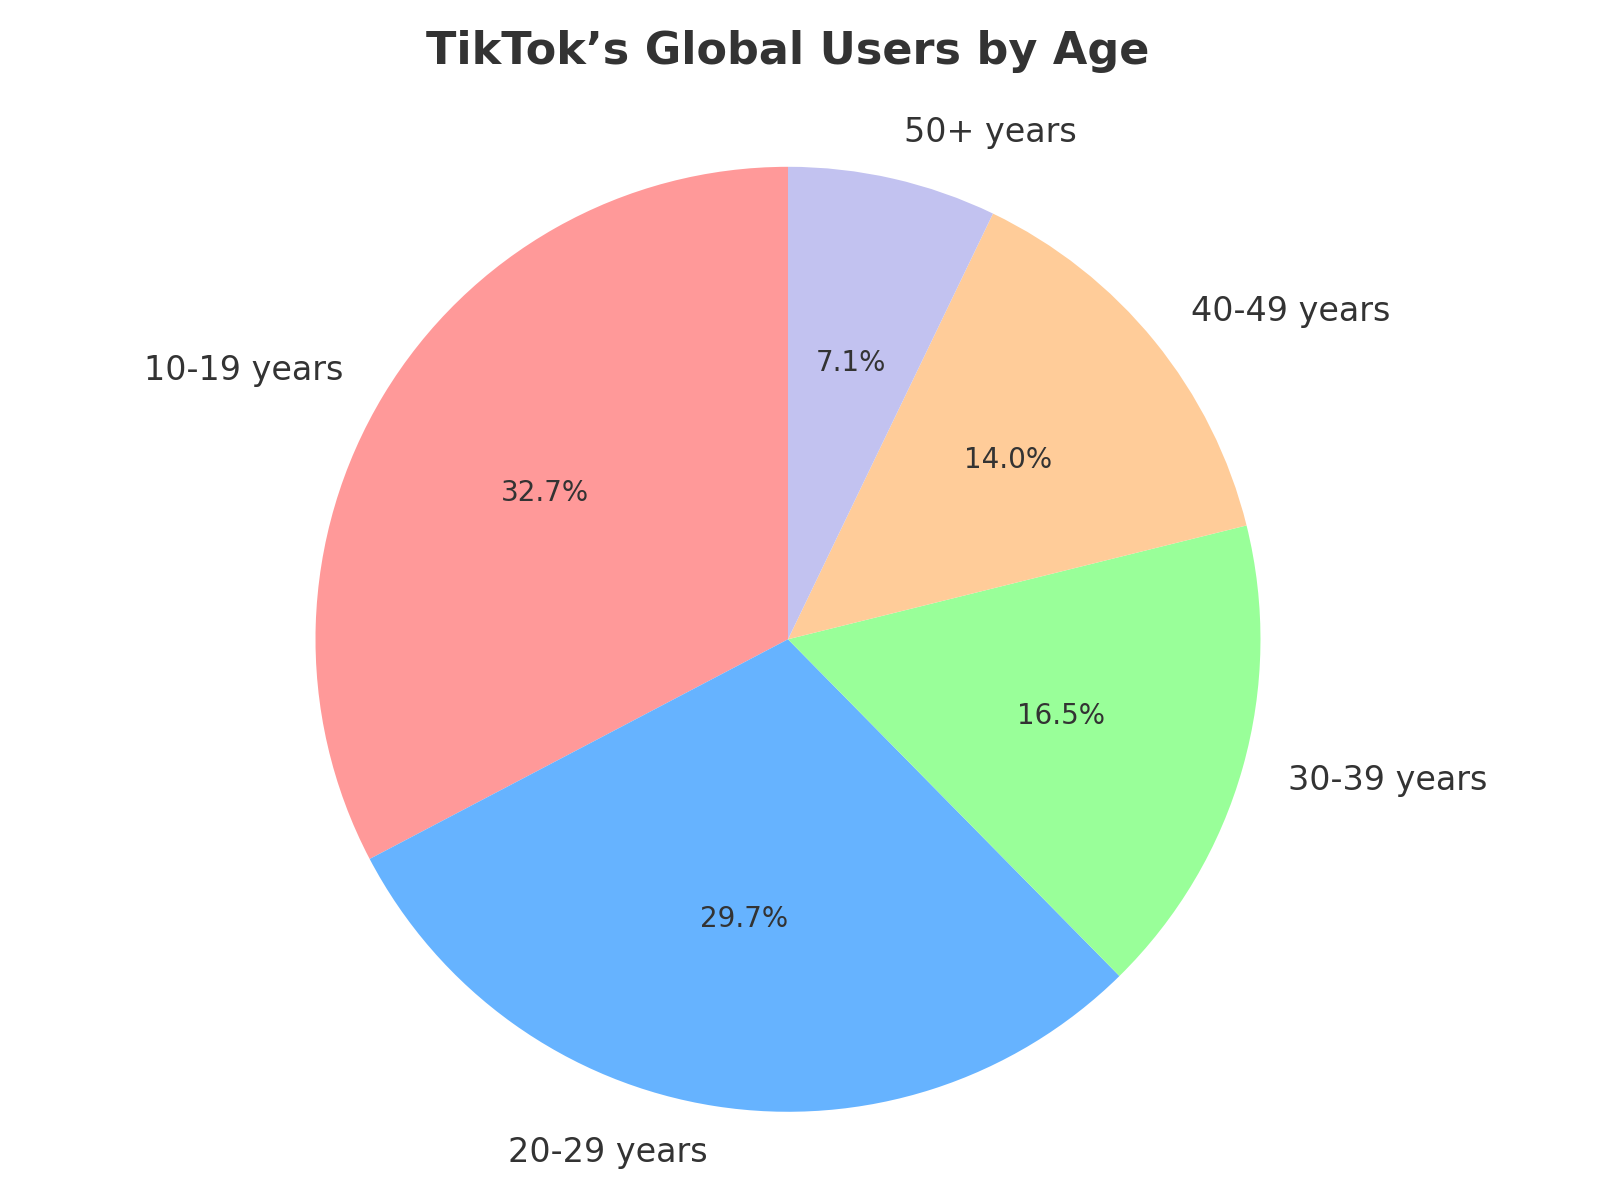 TikTok_Global_Users_by_Age_Pie_Chart